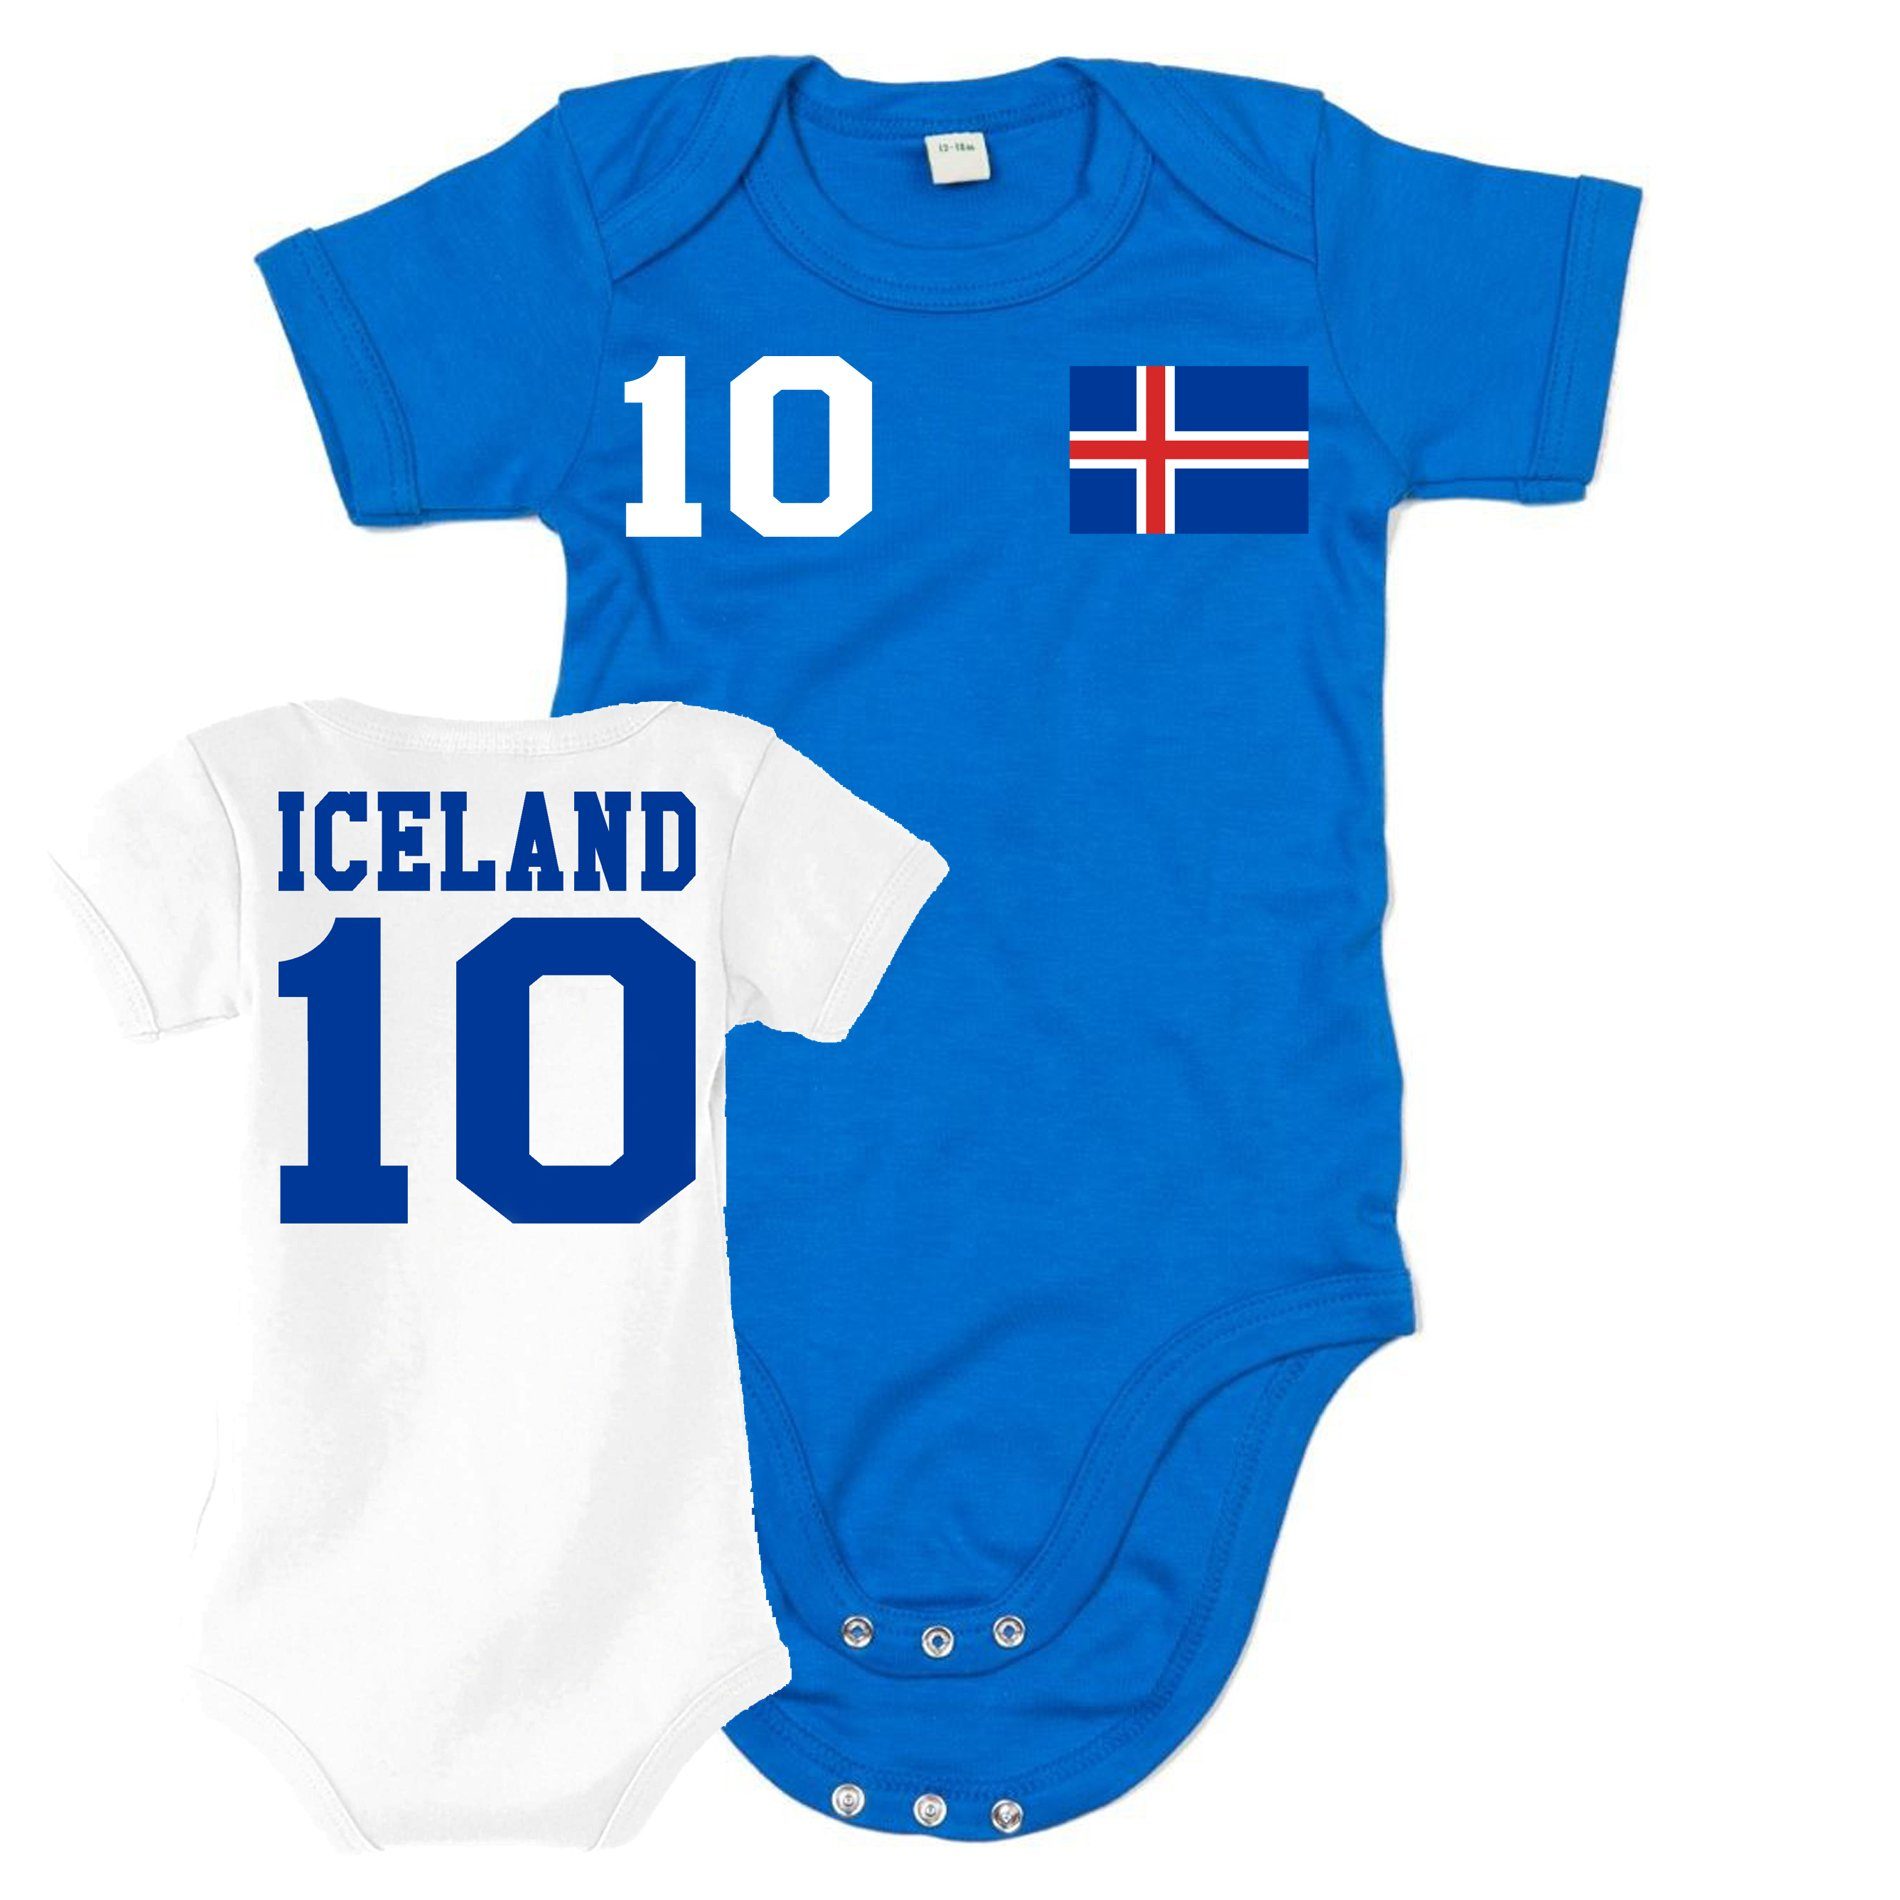 Sport Trikot Handball Blondie WM Brownie Strampler EM Meister Iceland Island Weiss/Blau & Fußball Baby Kinder